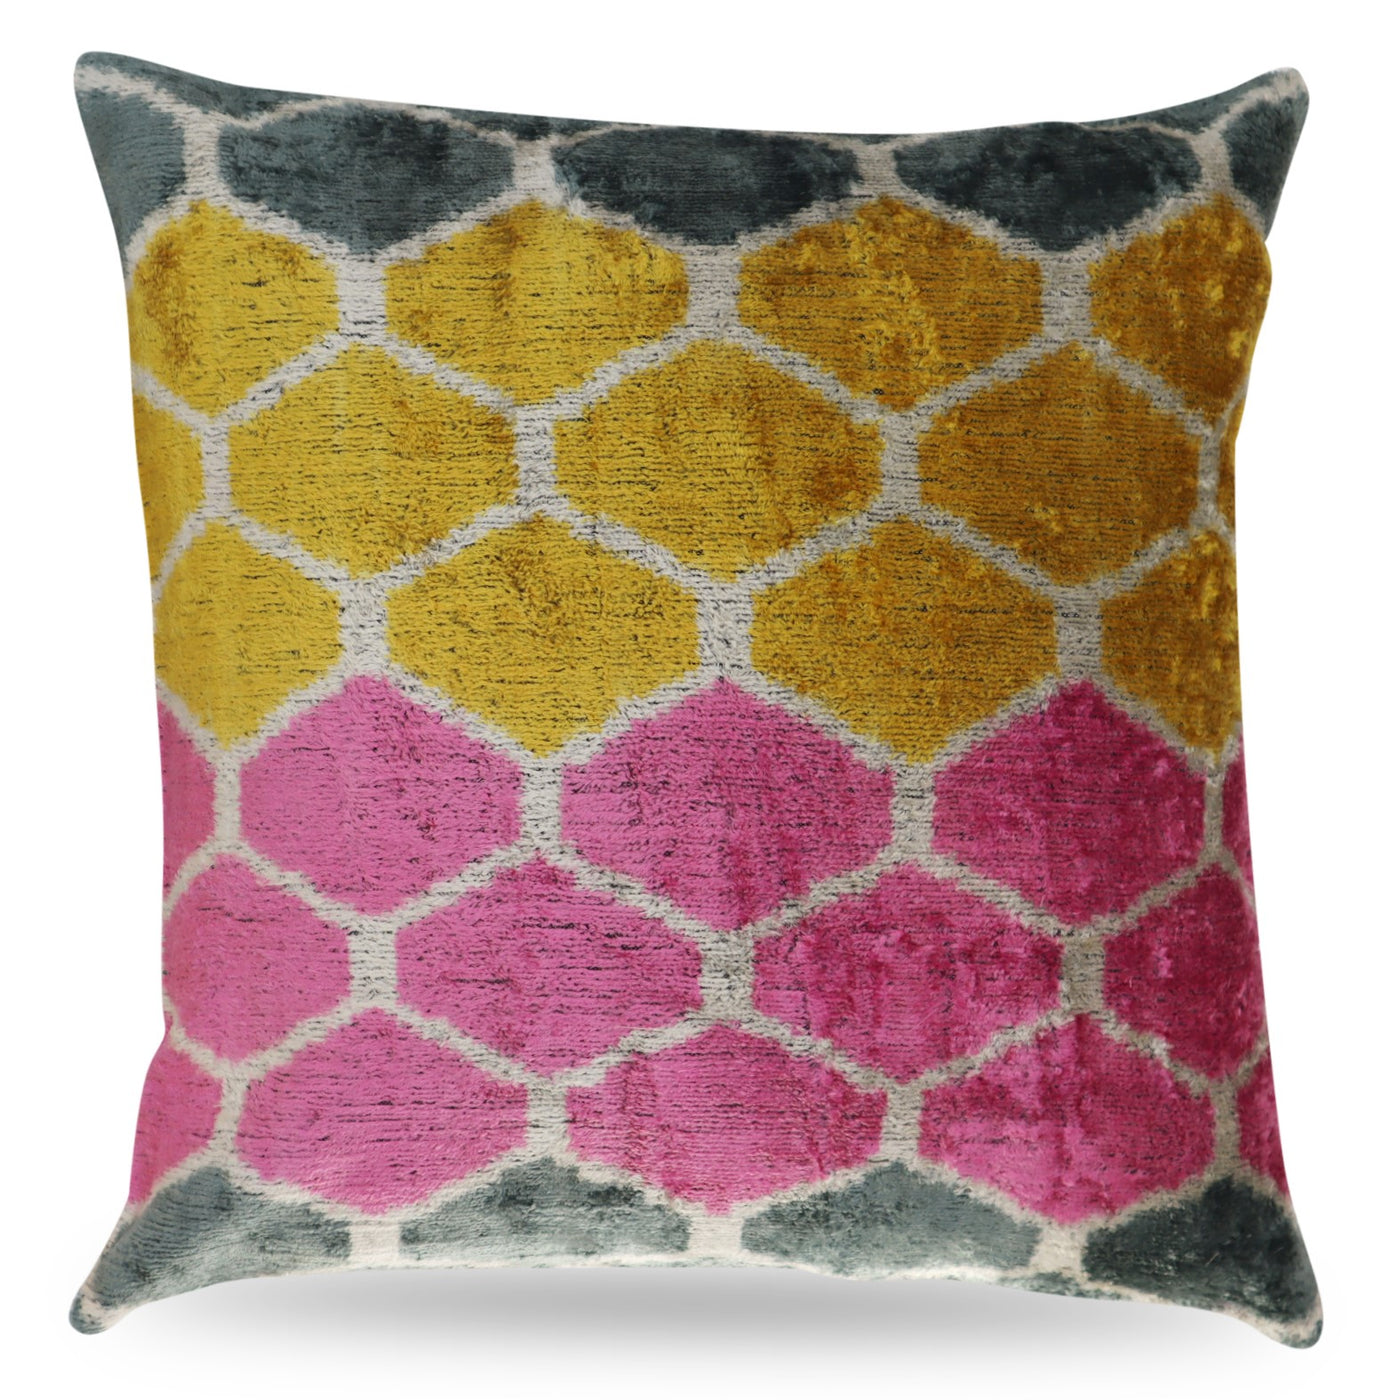 Canvello Pink Gold Gray Pillows | Canvello Yellow Pillows | Canvello